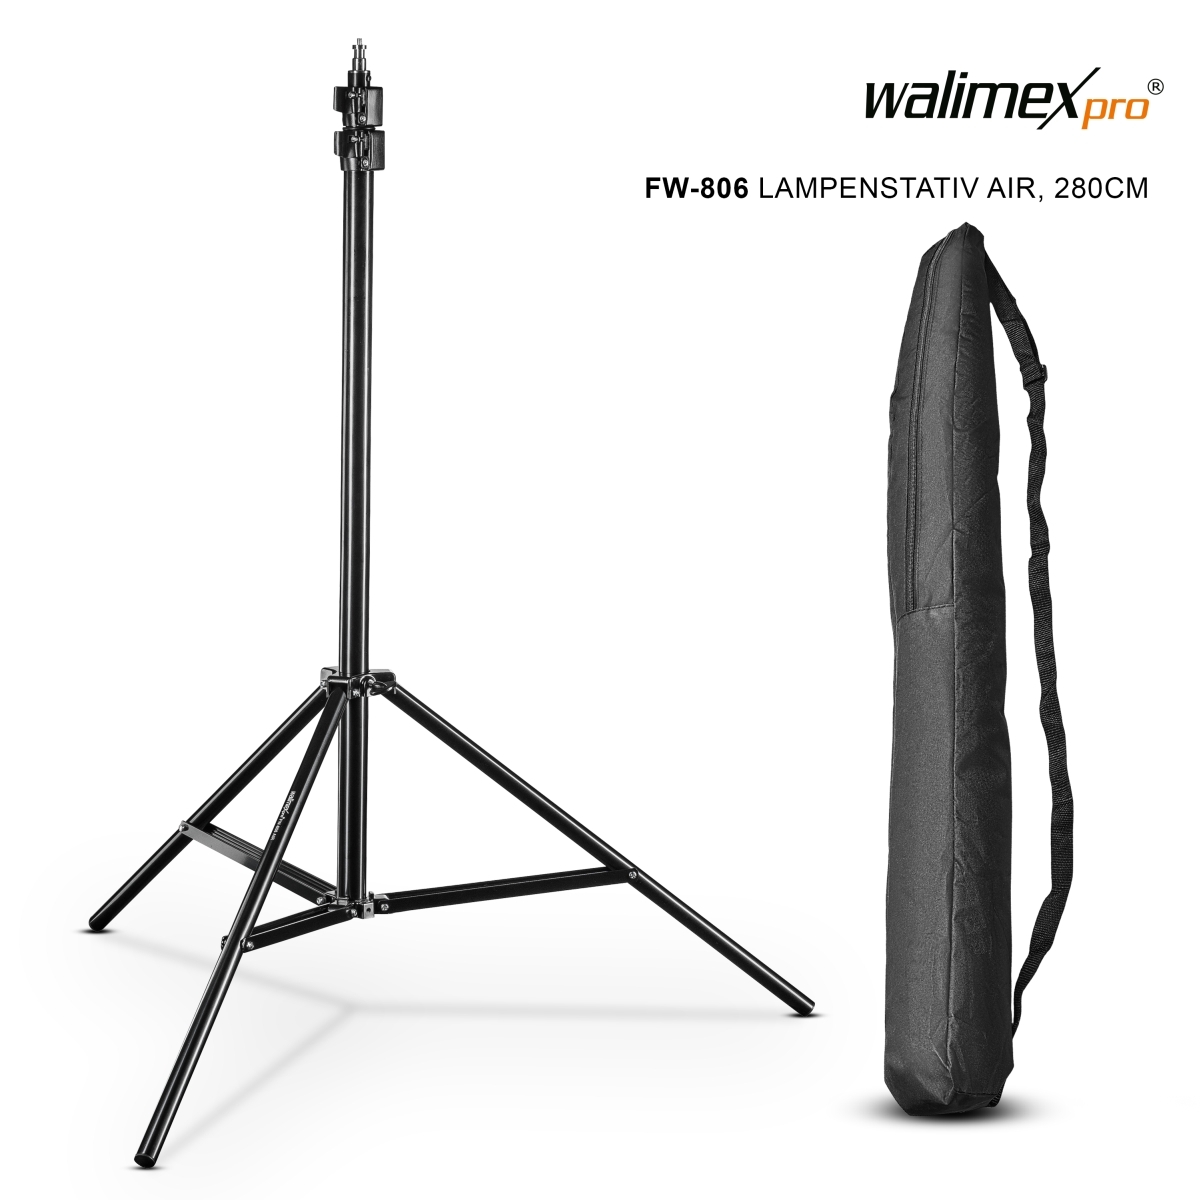 Walimex pro AIR 280 FW-806 Lampenstativ 280cm